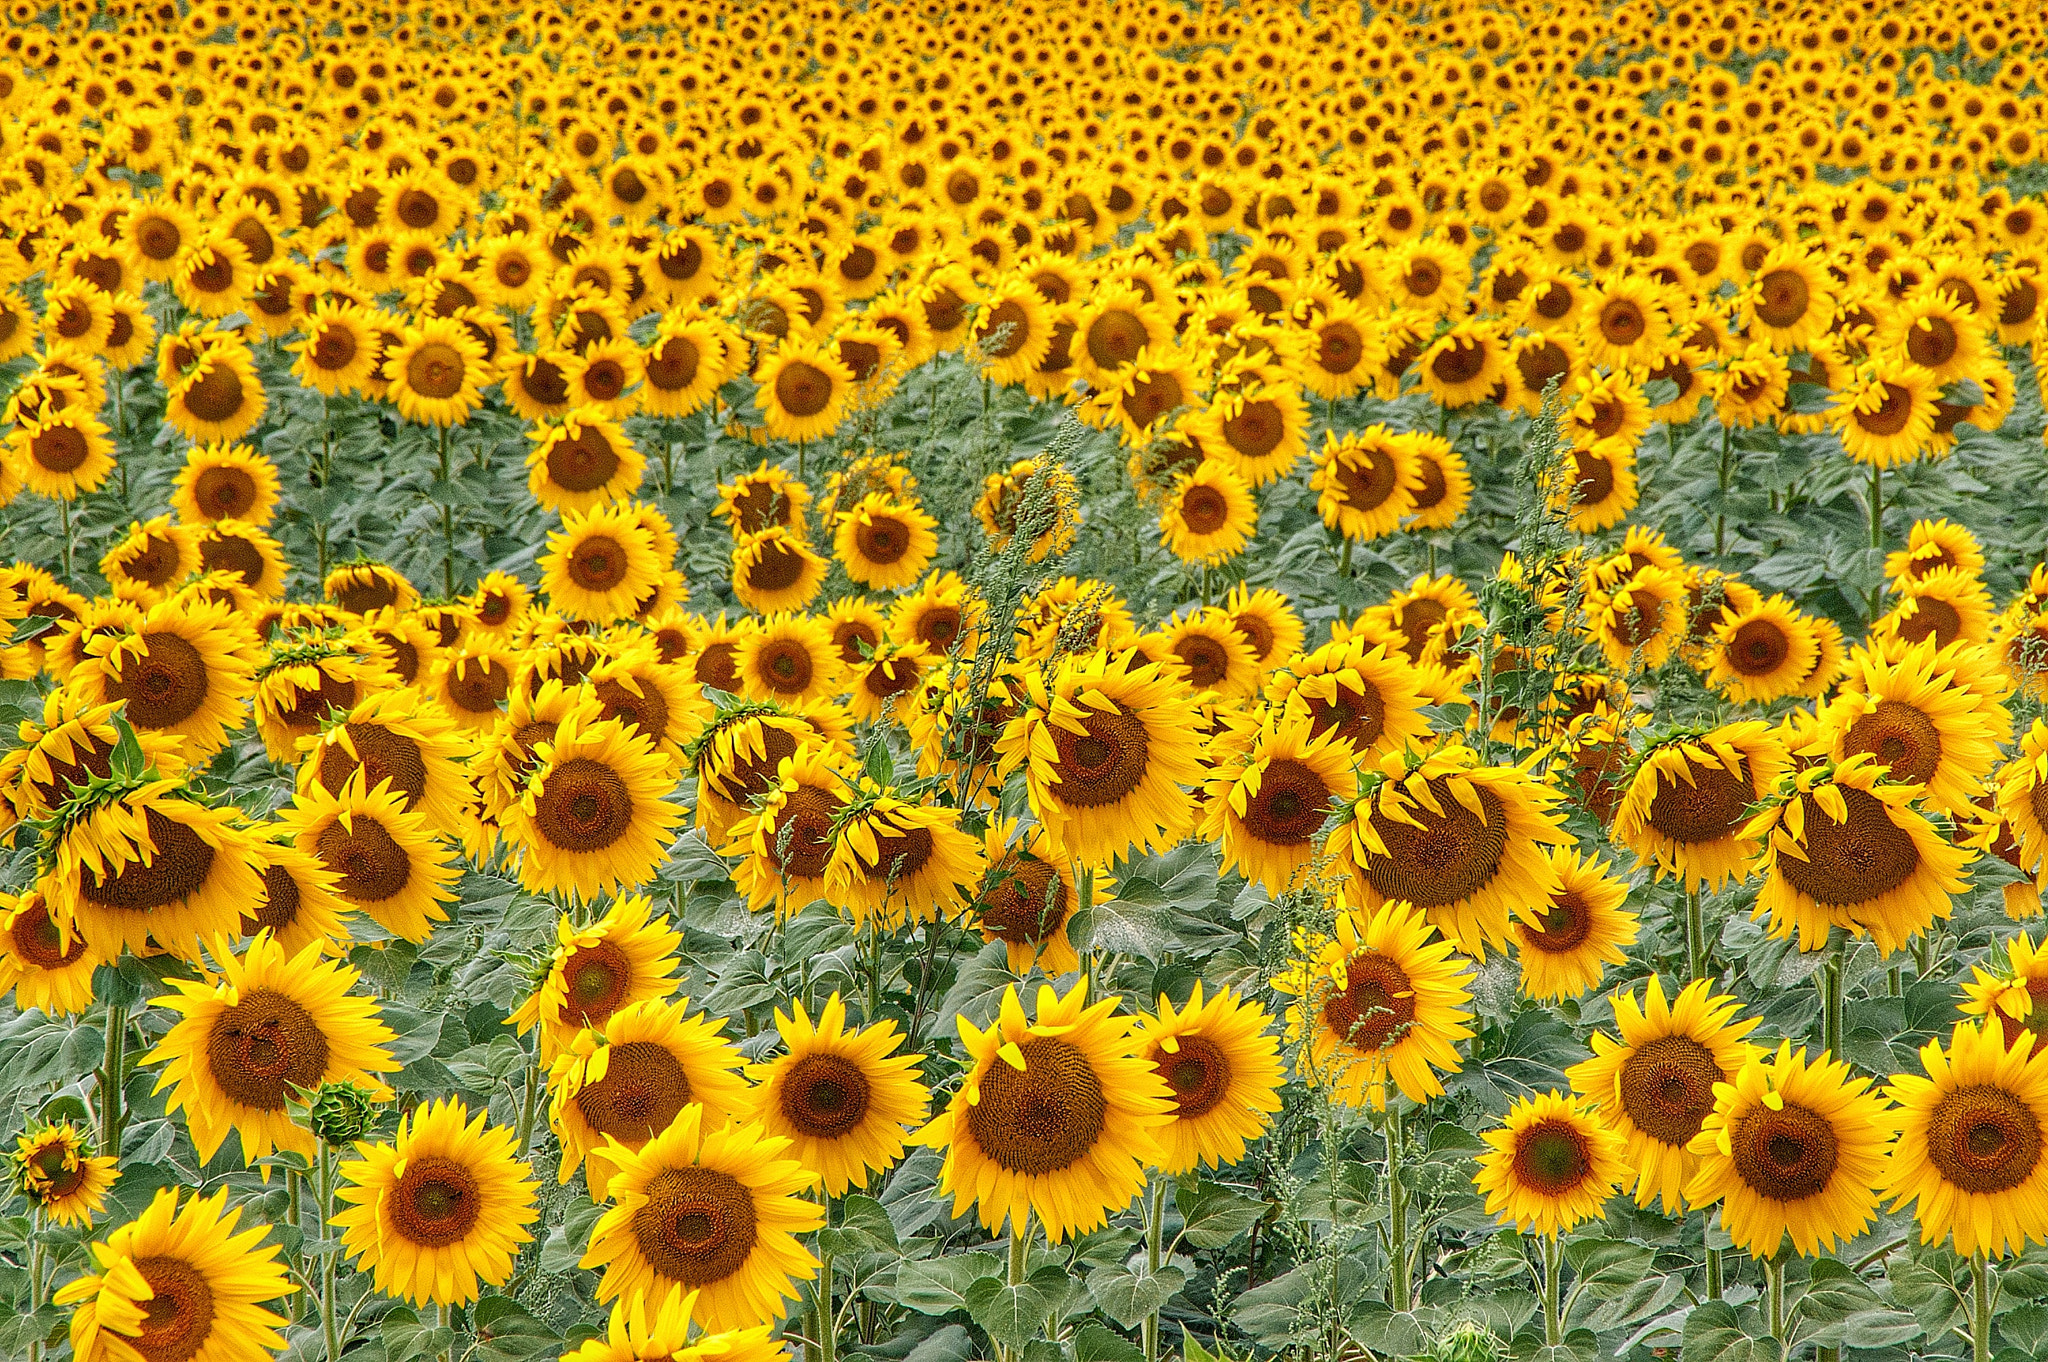 KONICA MINOLTA DYNAX 5D sample photo. Sunflower fields photography